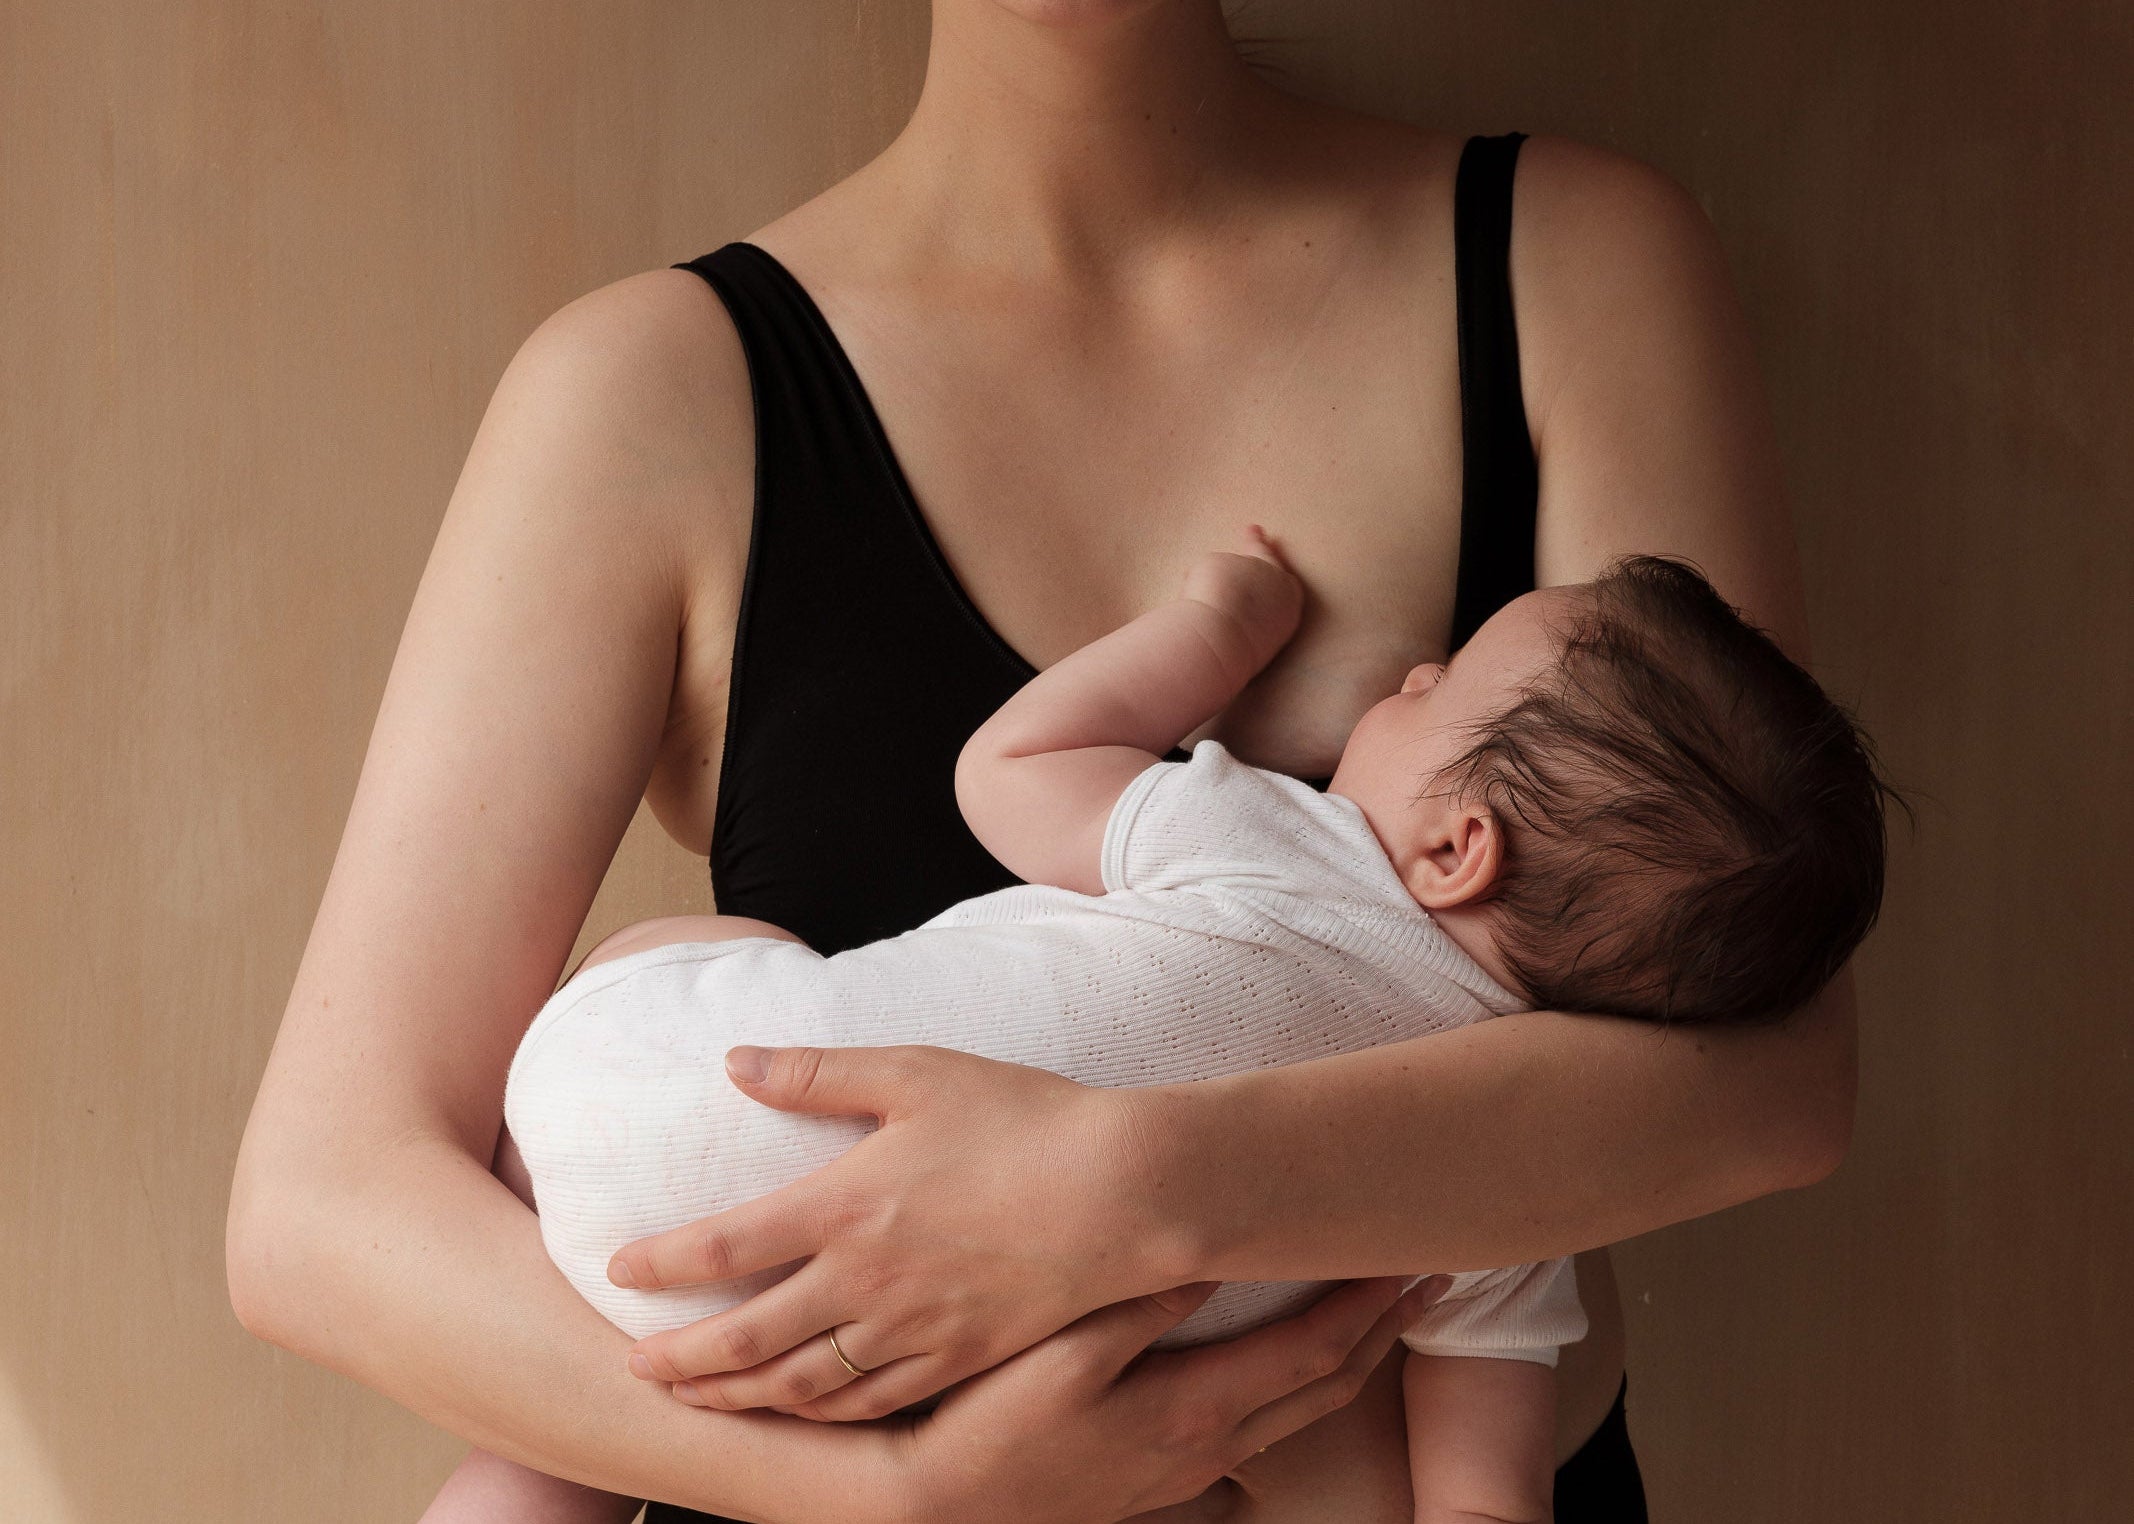 Simplmasygenix Bras Clearance Summer Fall Sport Sexy Women Feeding Nursing  Pregnant Maternity Bra Breastfeeding Underwear 